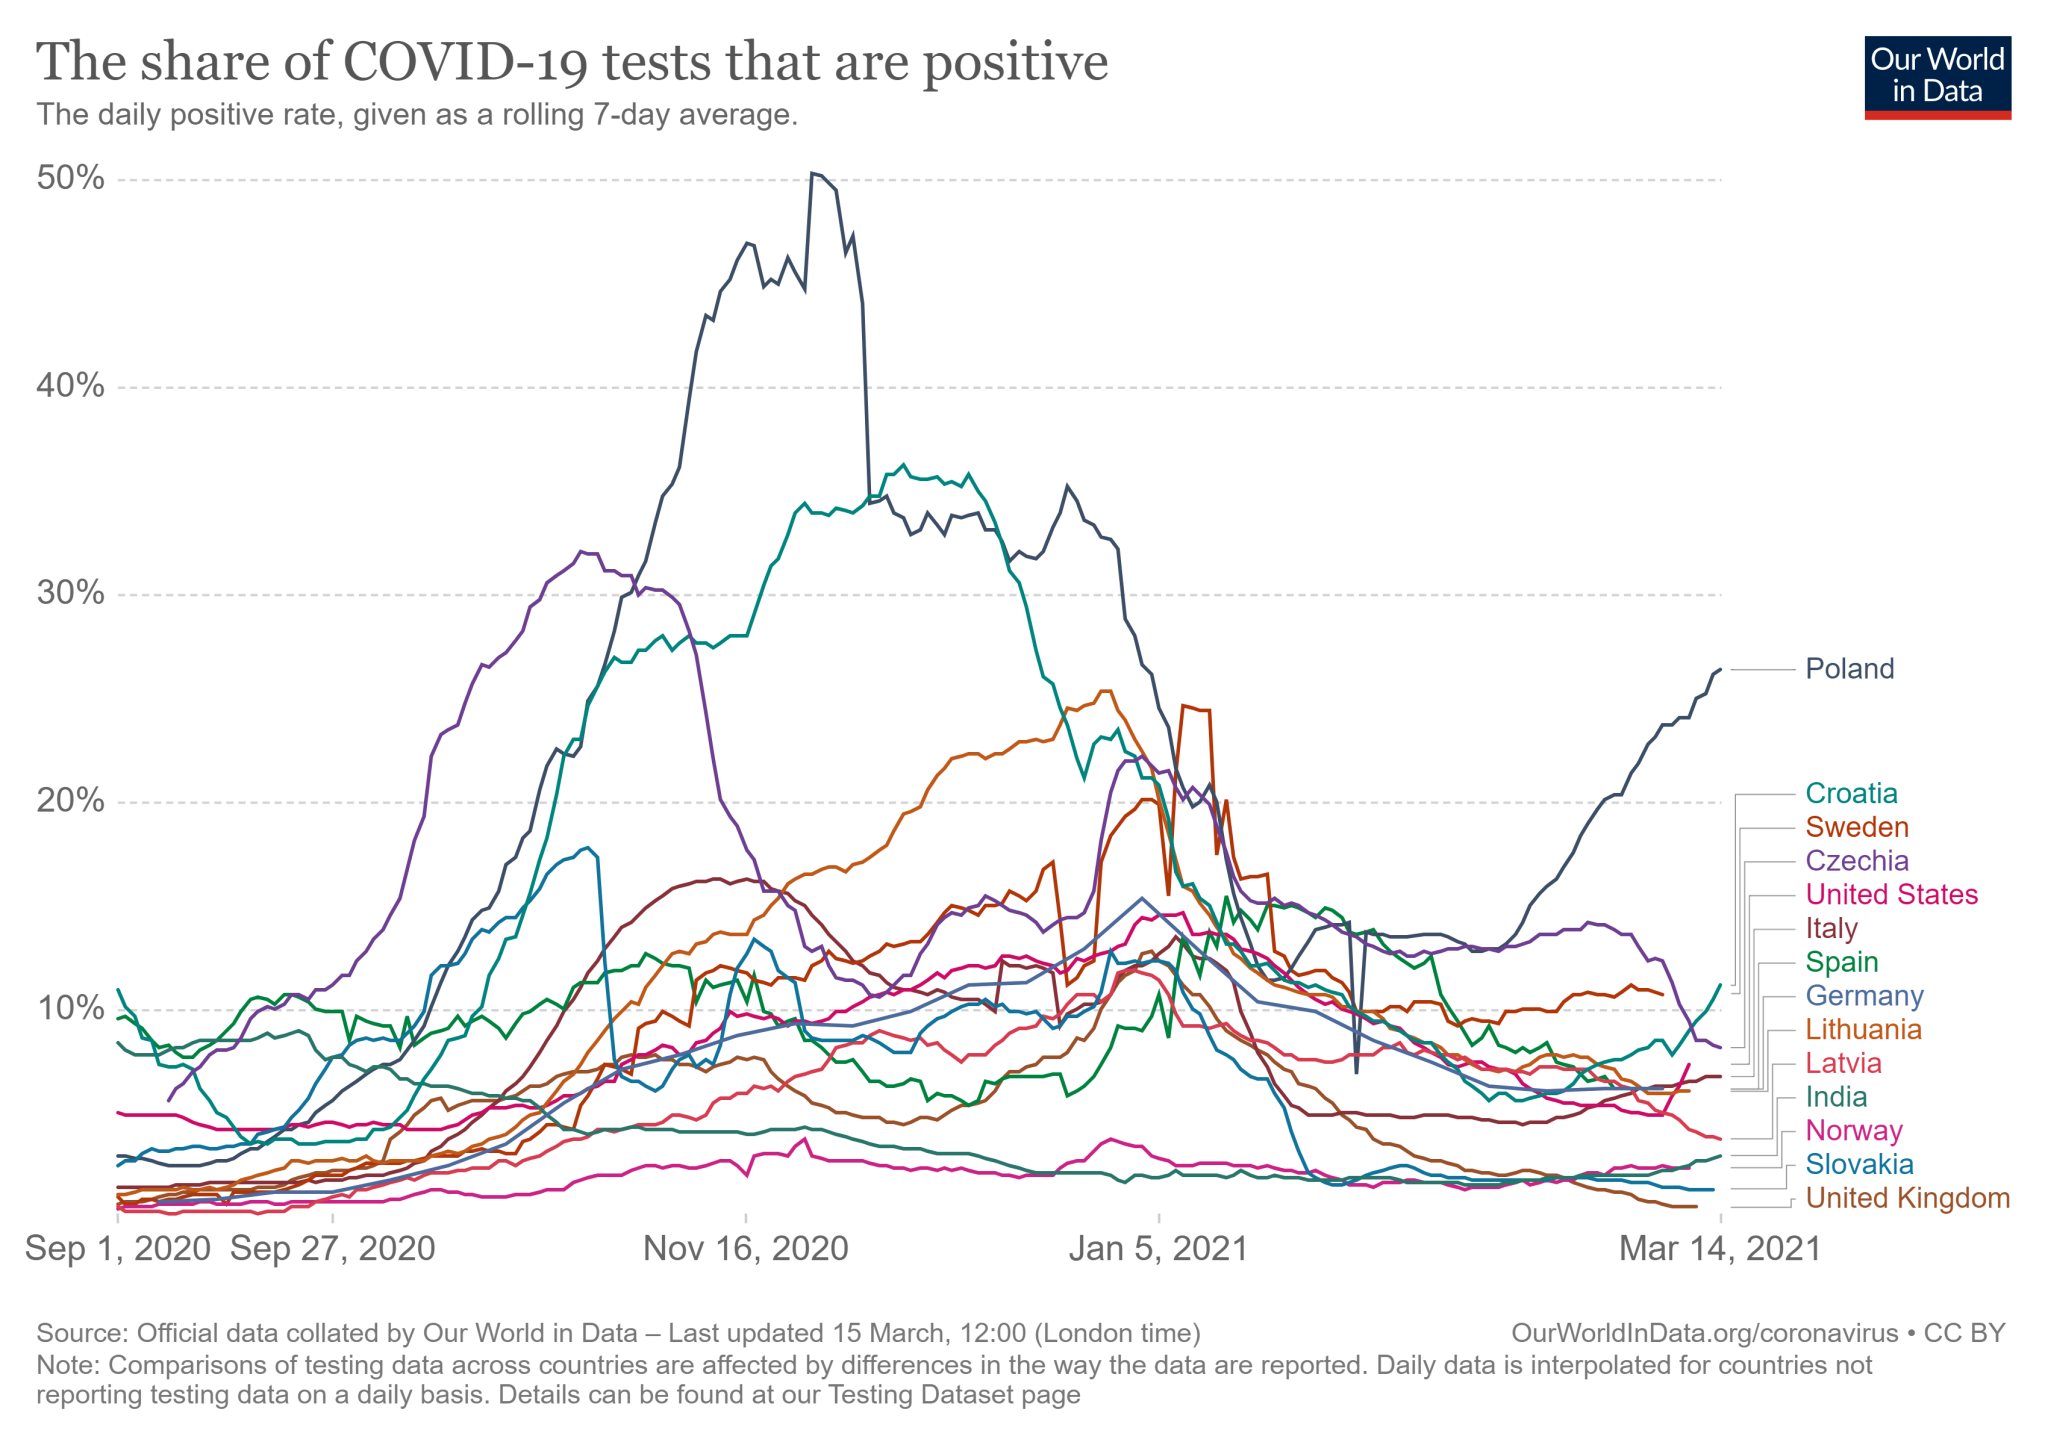 Siedmiodniowa średnia krocząca wskaźnika pozytywnych testów na koronawirusa w Polsce i 13 wybranych krajach od 1 września 2020 do 14 marca 2021